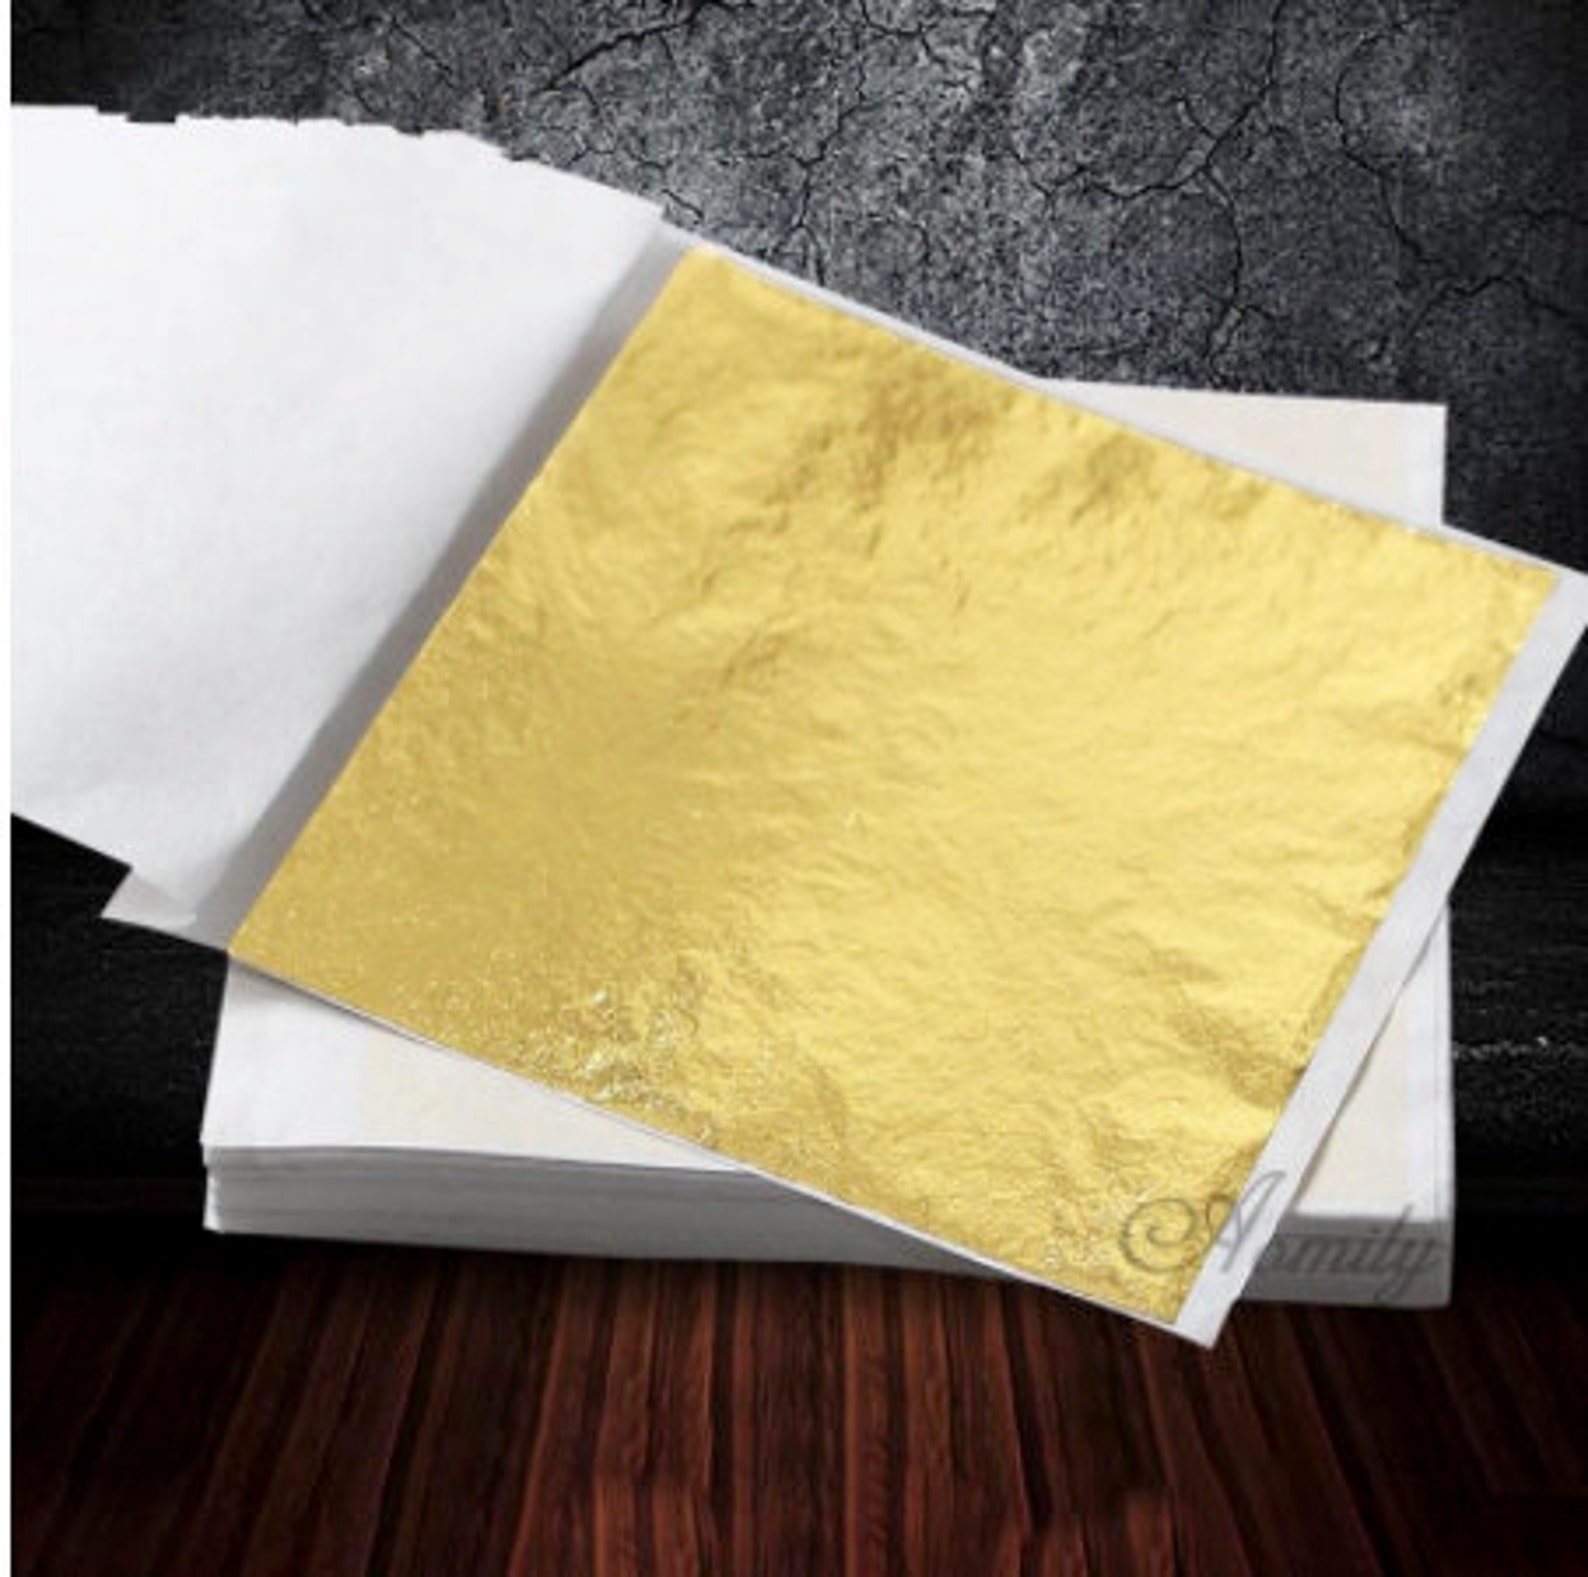 100 Gold Leaf Sheets Practical K Pure Shiny Gold Leaf for | Etsy